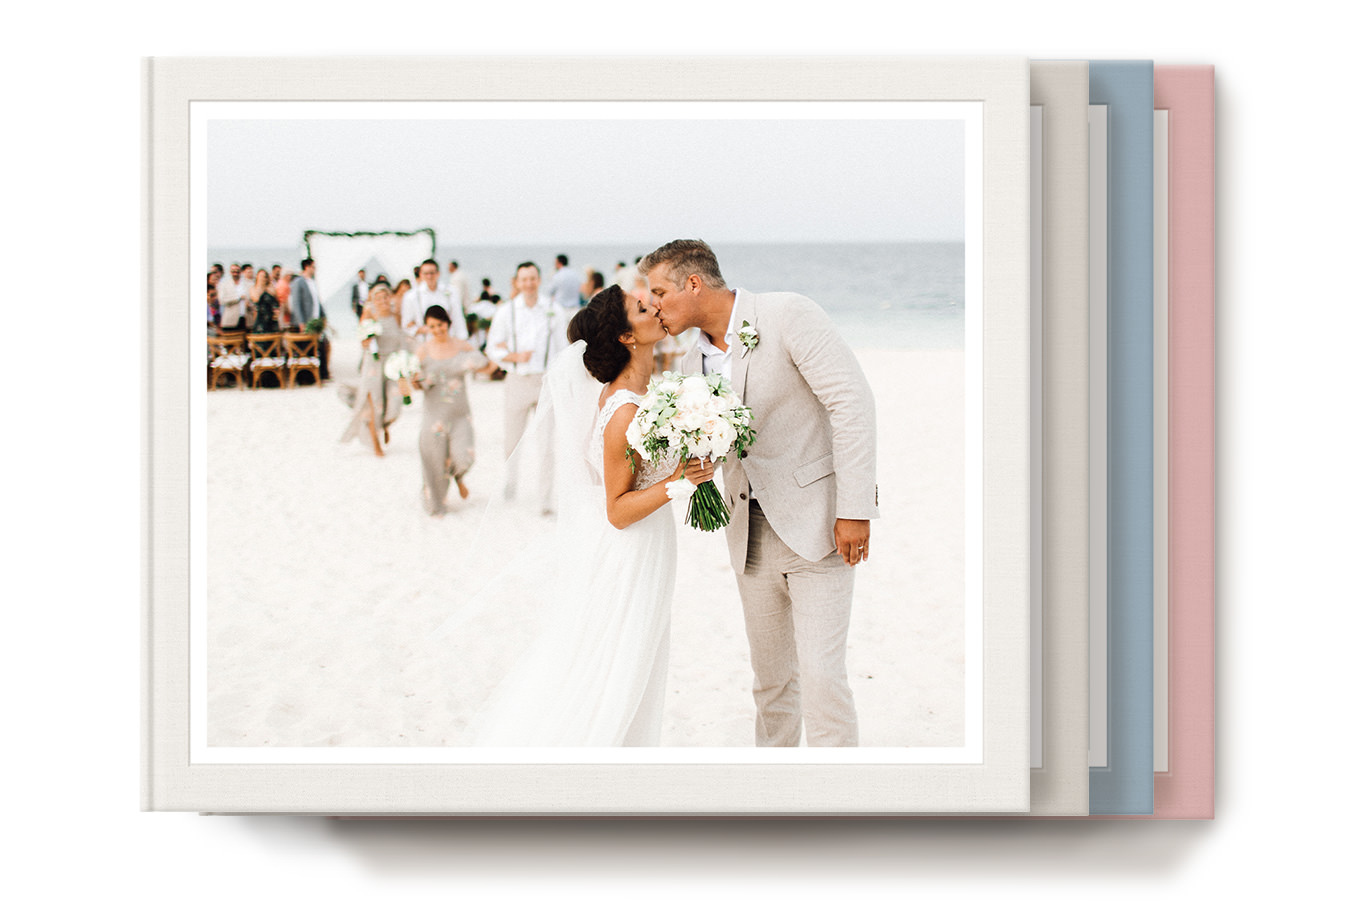 Álbum de fotos clássico com noivas e noivos beijando na capa.